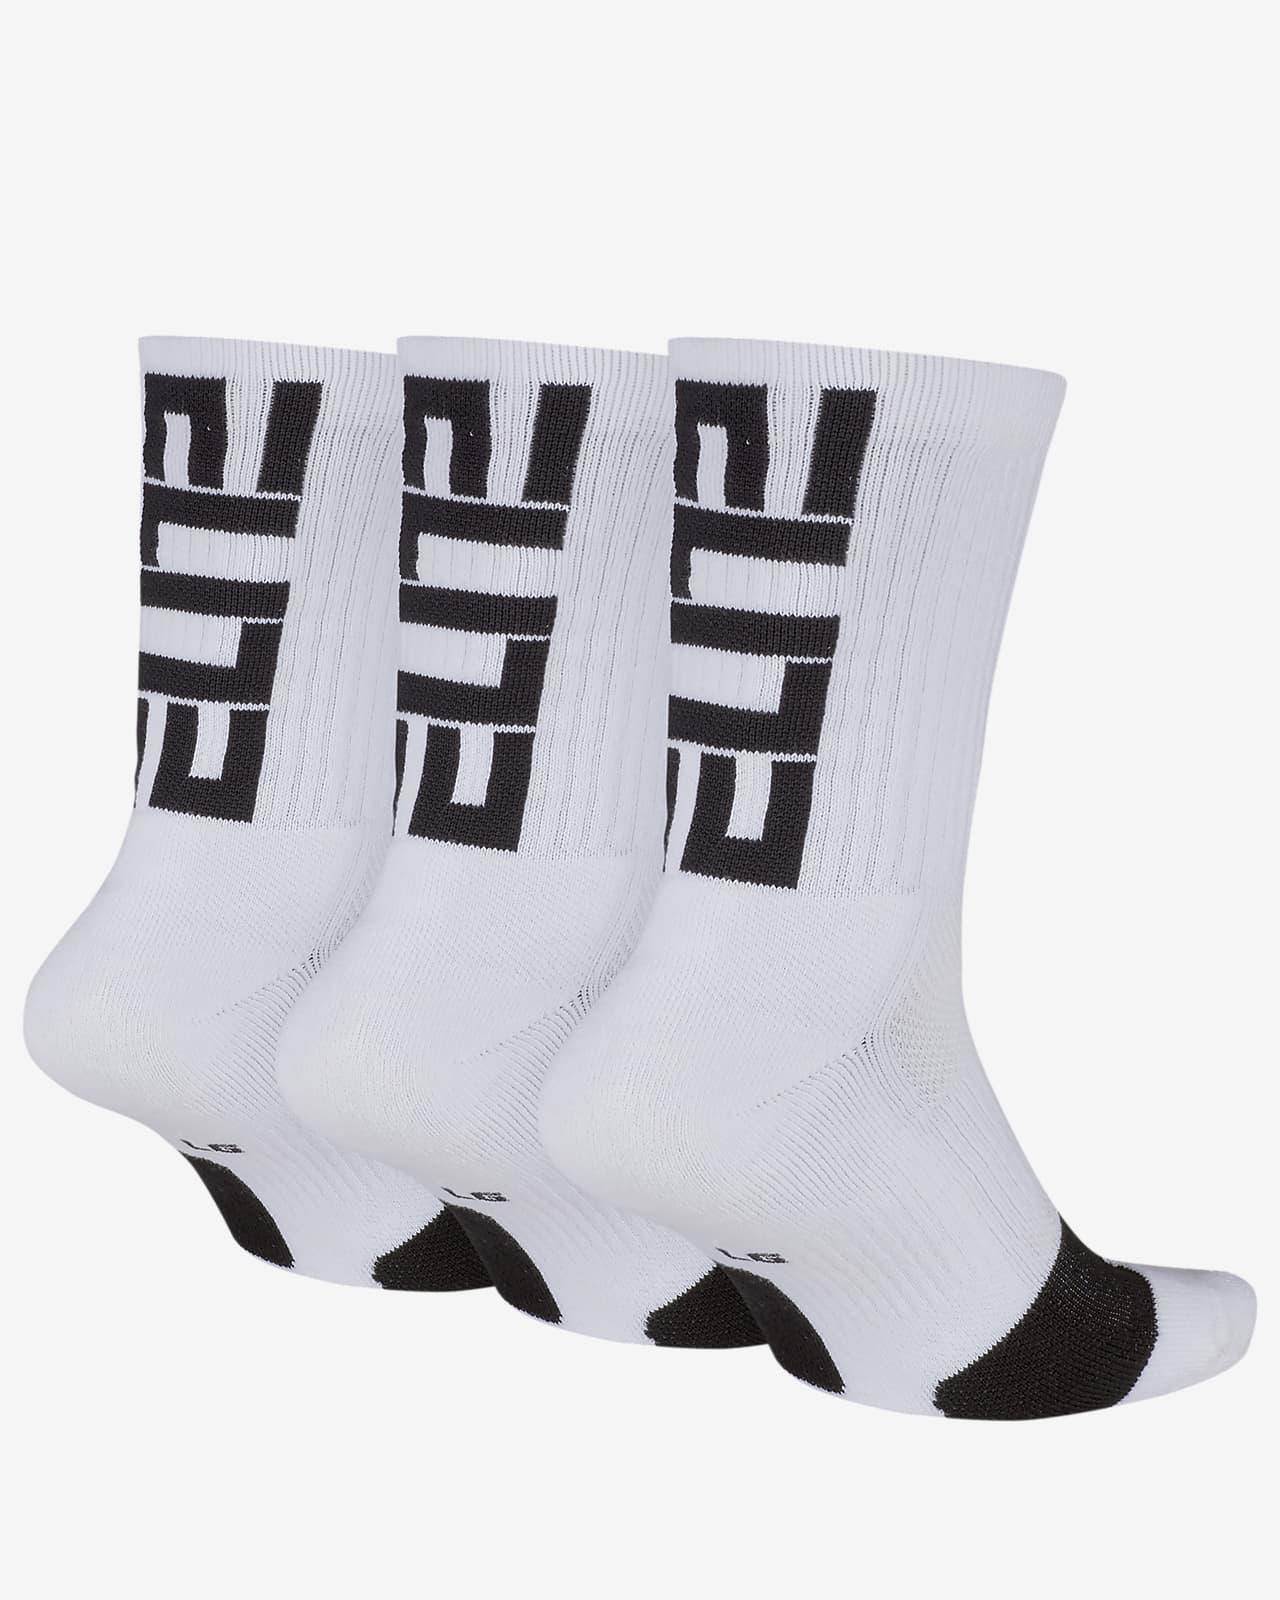 nike elite socks price